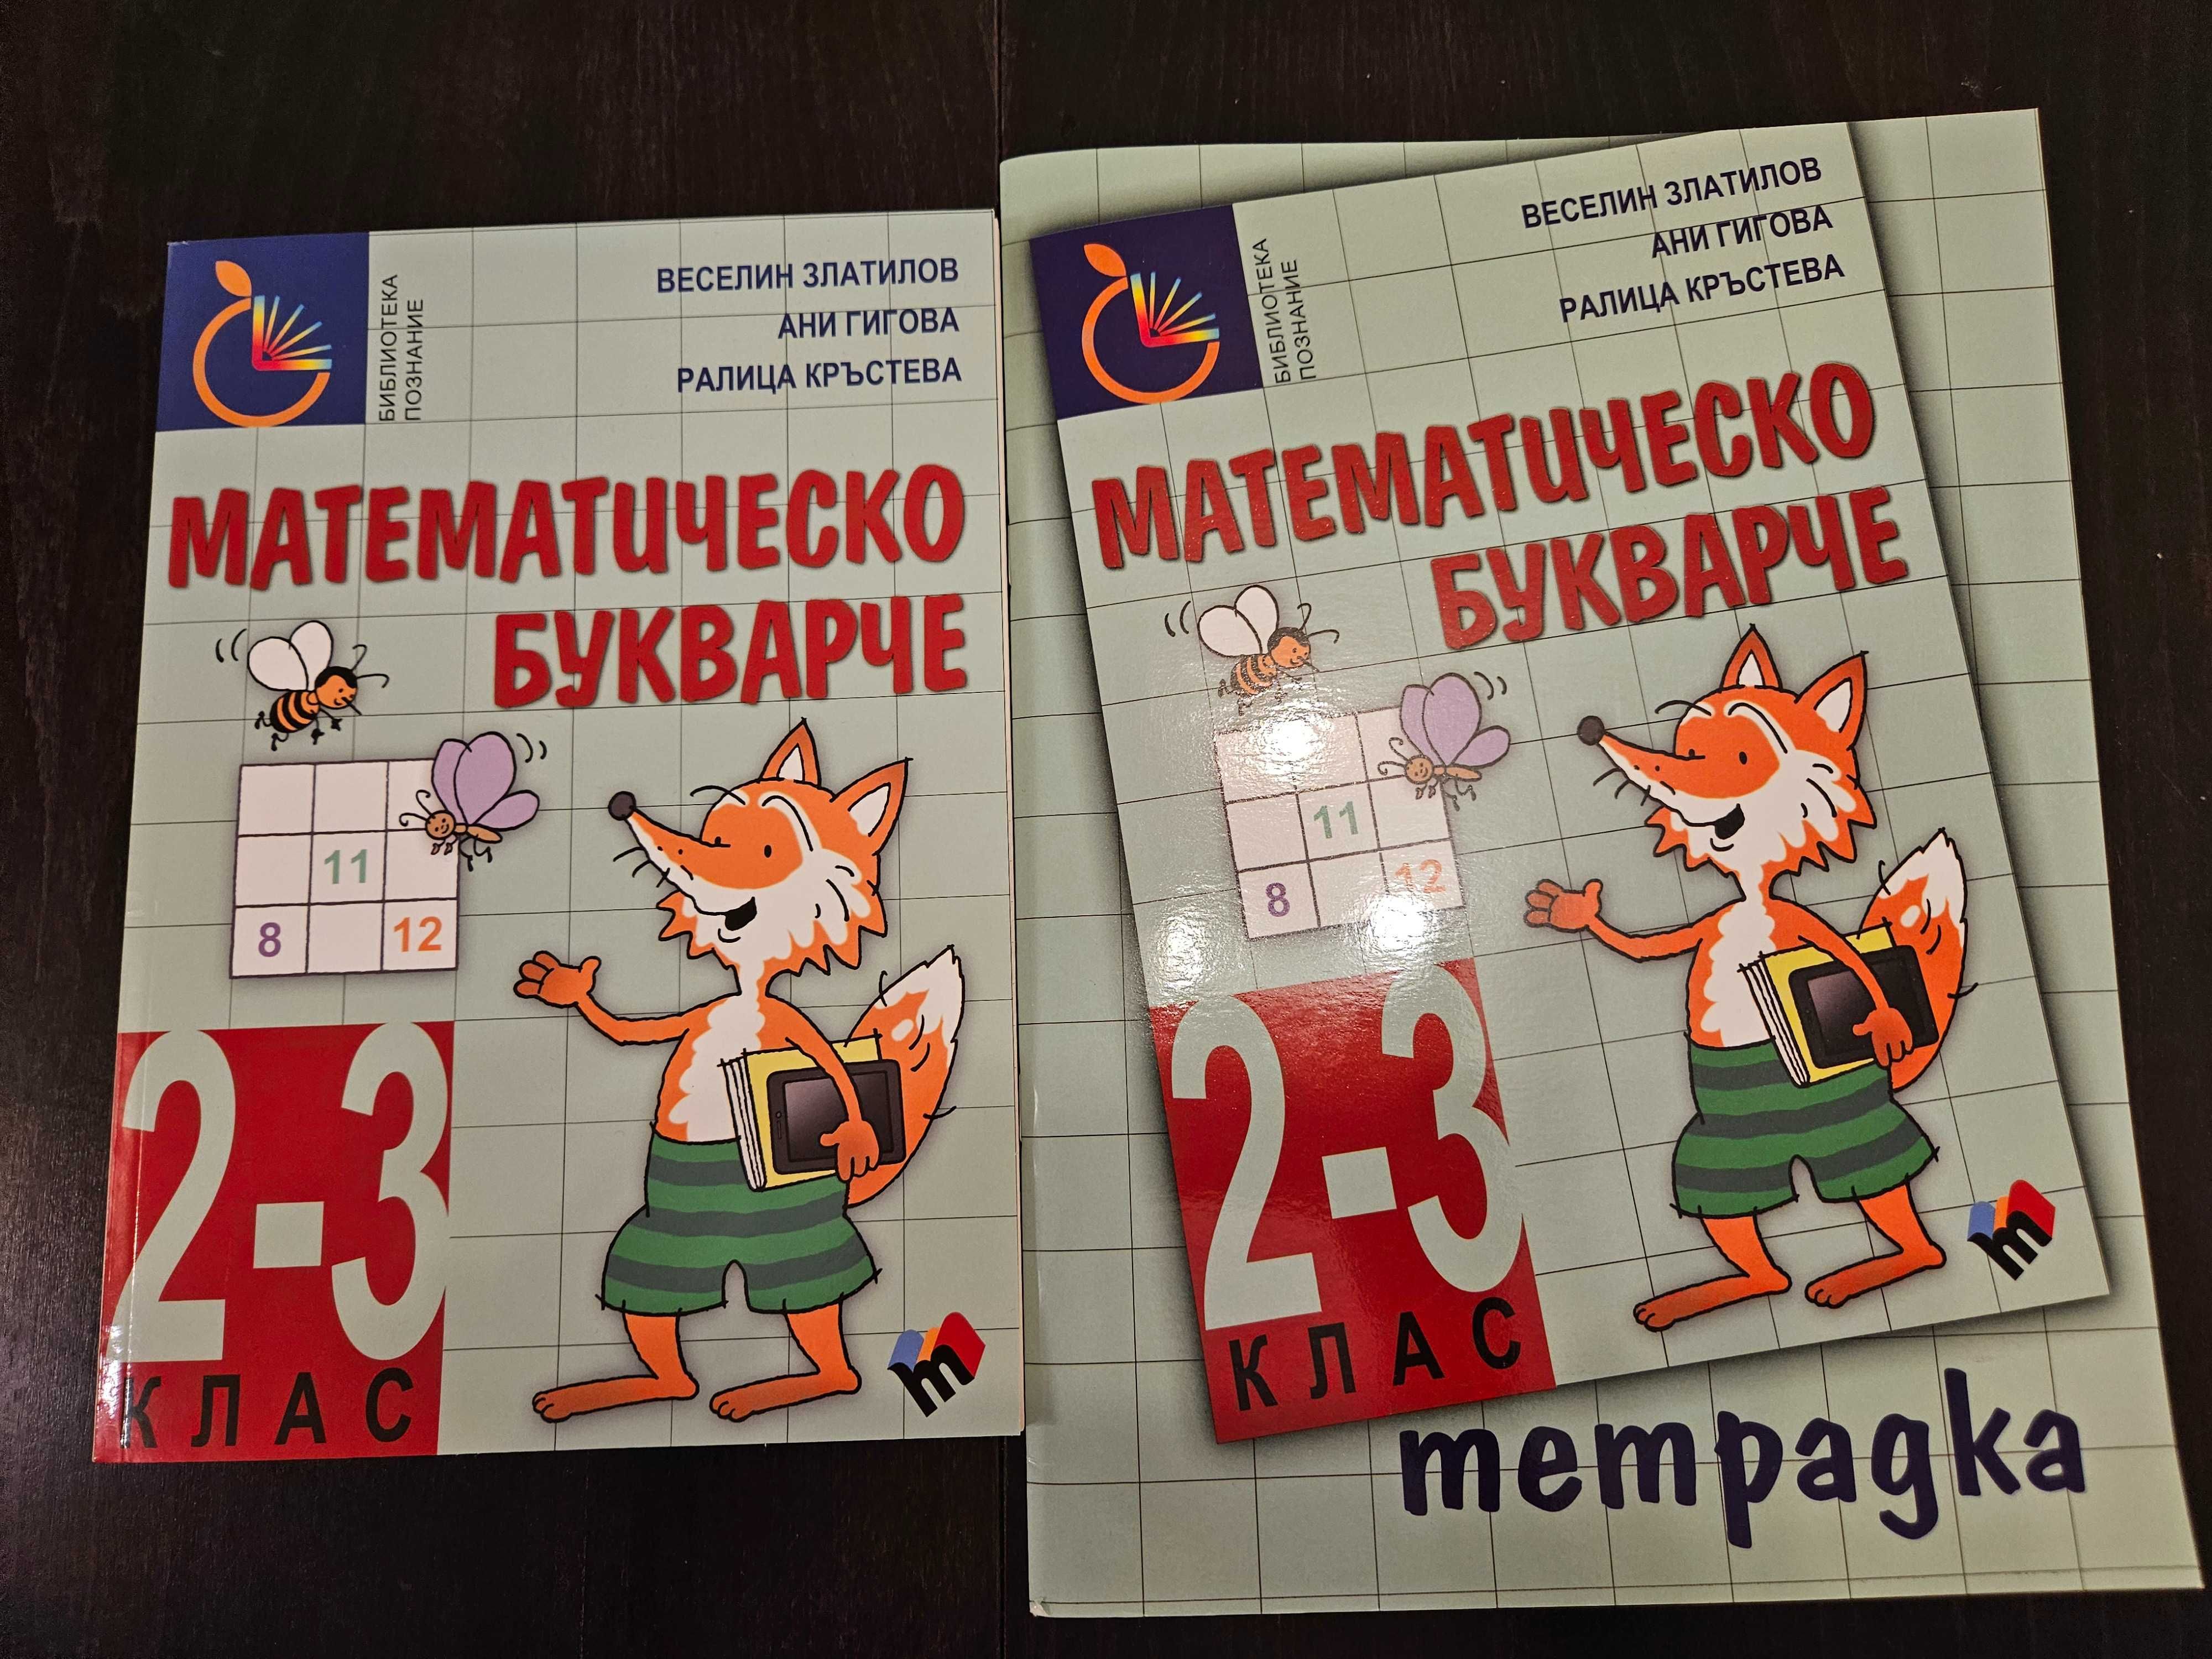 Комплект тетрадка + учебник "Математическо букварче" за 2-3 клас